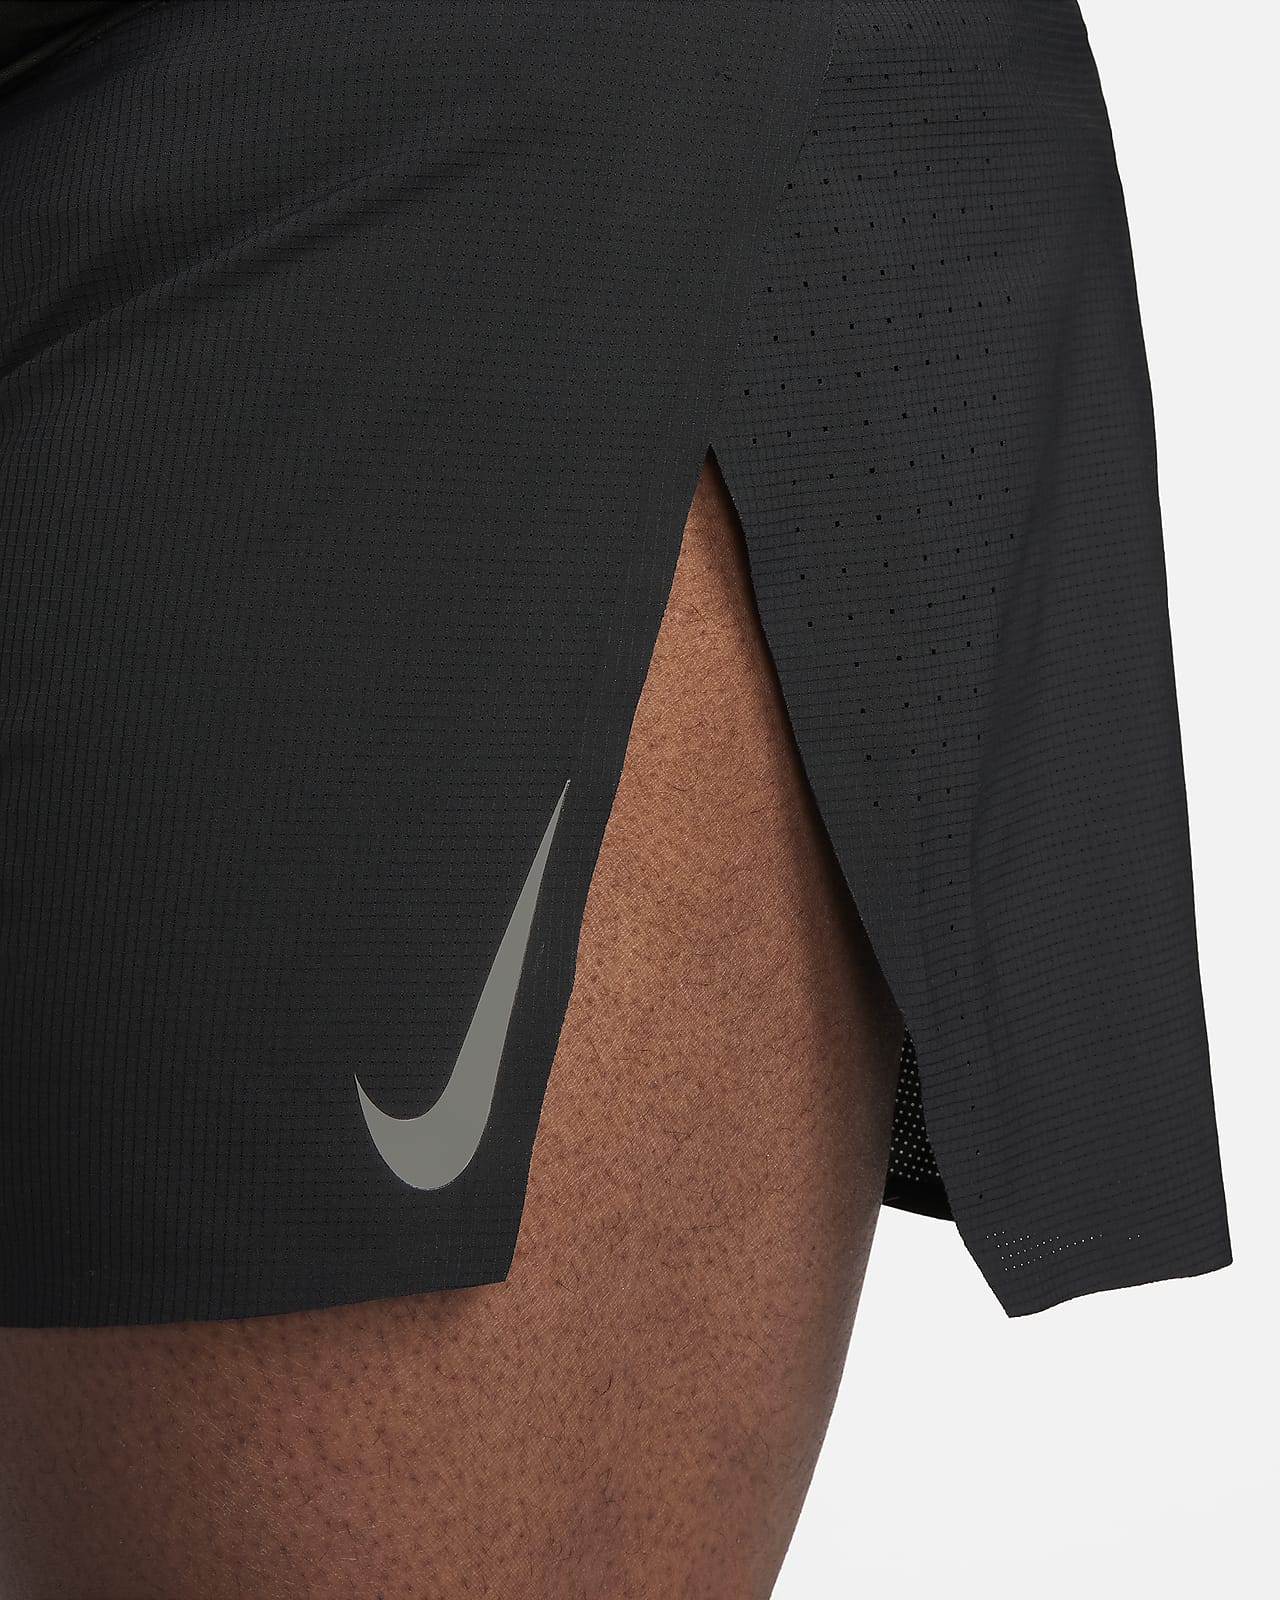 Nike Womens Basketball Aeroswift Shorts - Cool Grey/Black – SwiSh basketball